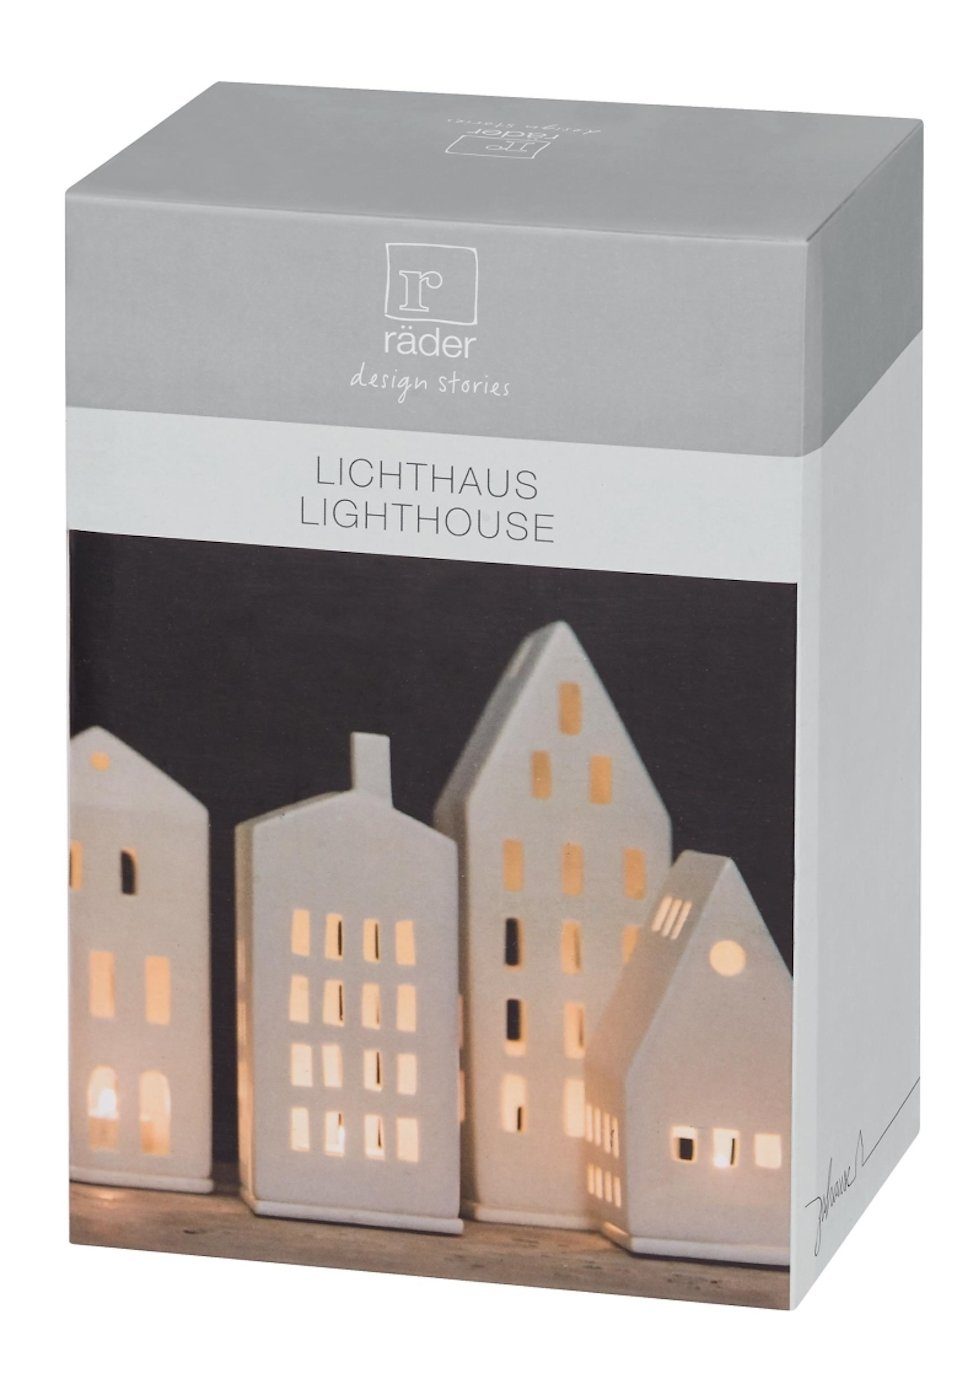 H13cm Design Vogelhaus Räder Lichthaus Porzellan Teelichthalter weiß unglasiertes